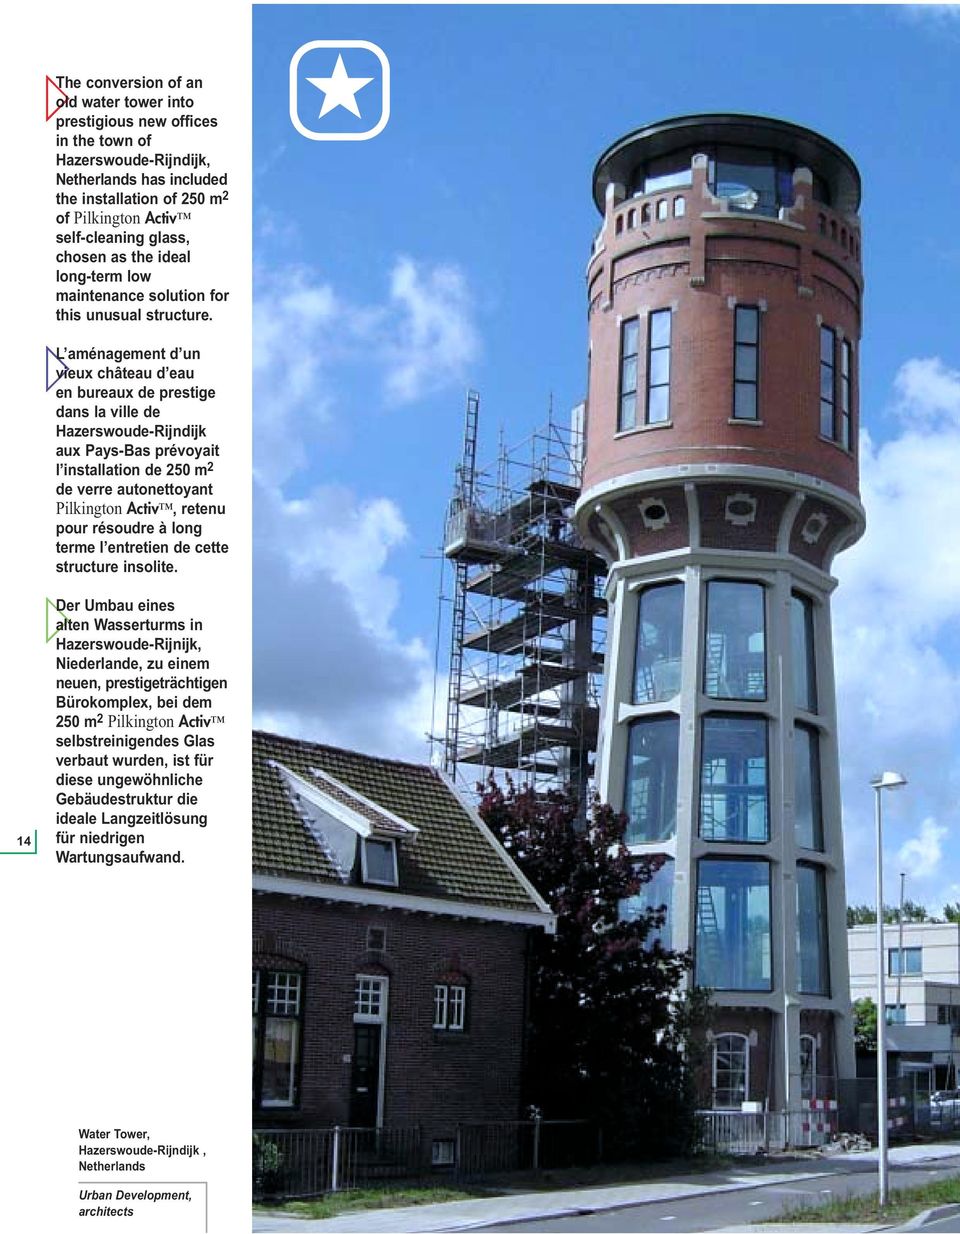 L aménagement d un vieux château d eau en bureaux de prestige dans la ville de Hazerswoude-Rijndijk aux Pays-Bas prévoyait l installation de 250 m 2 de verre autonettoyant Pilkington Activ, retenu